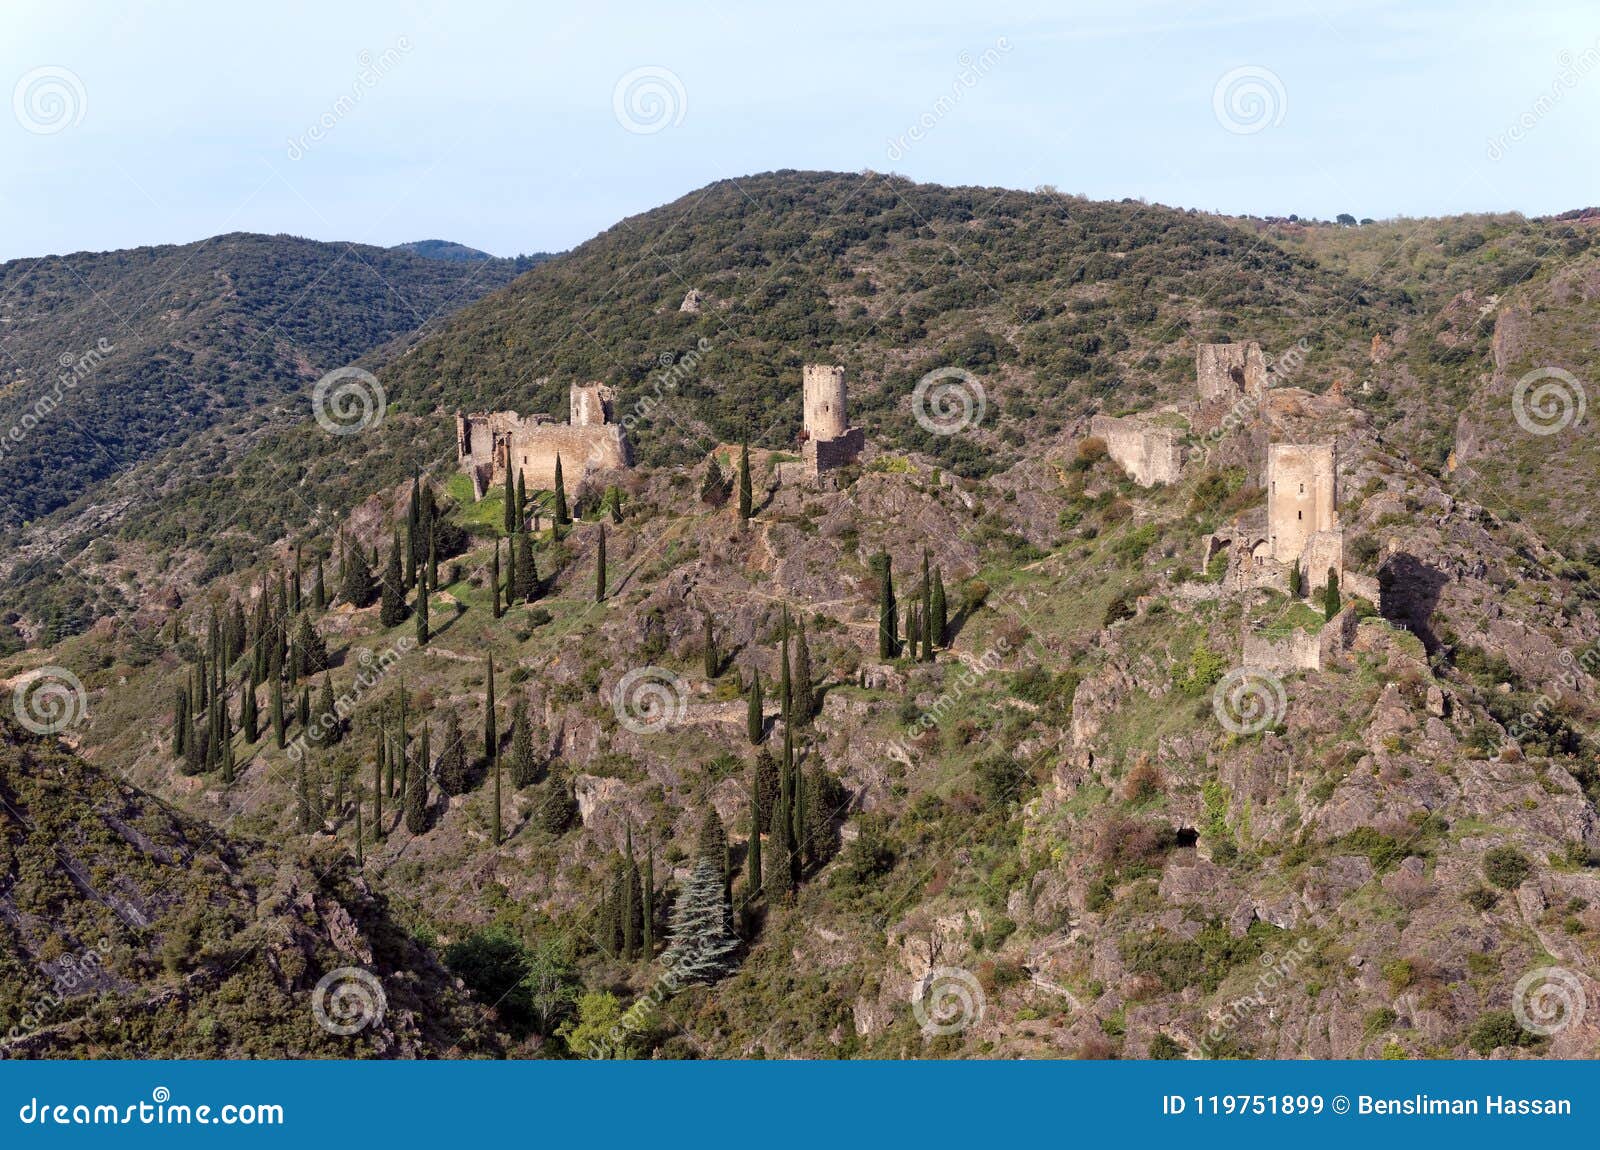 lastours castles in cathar mountain